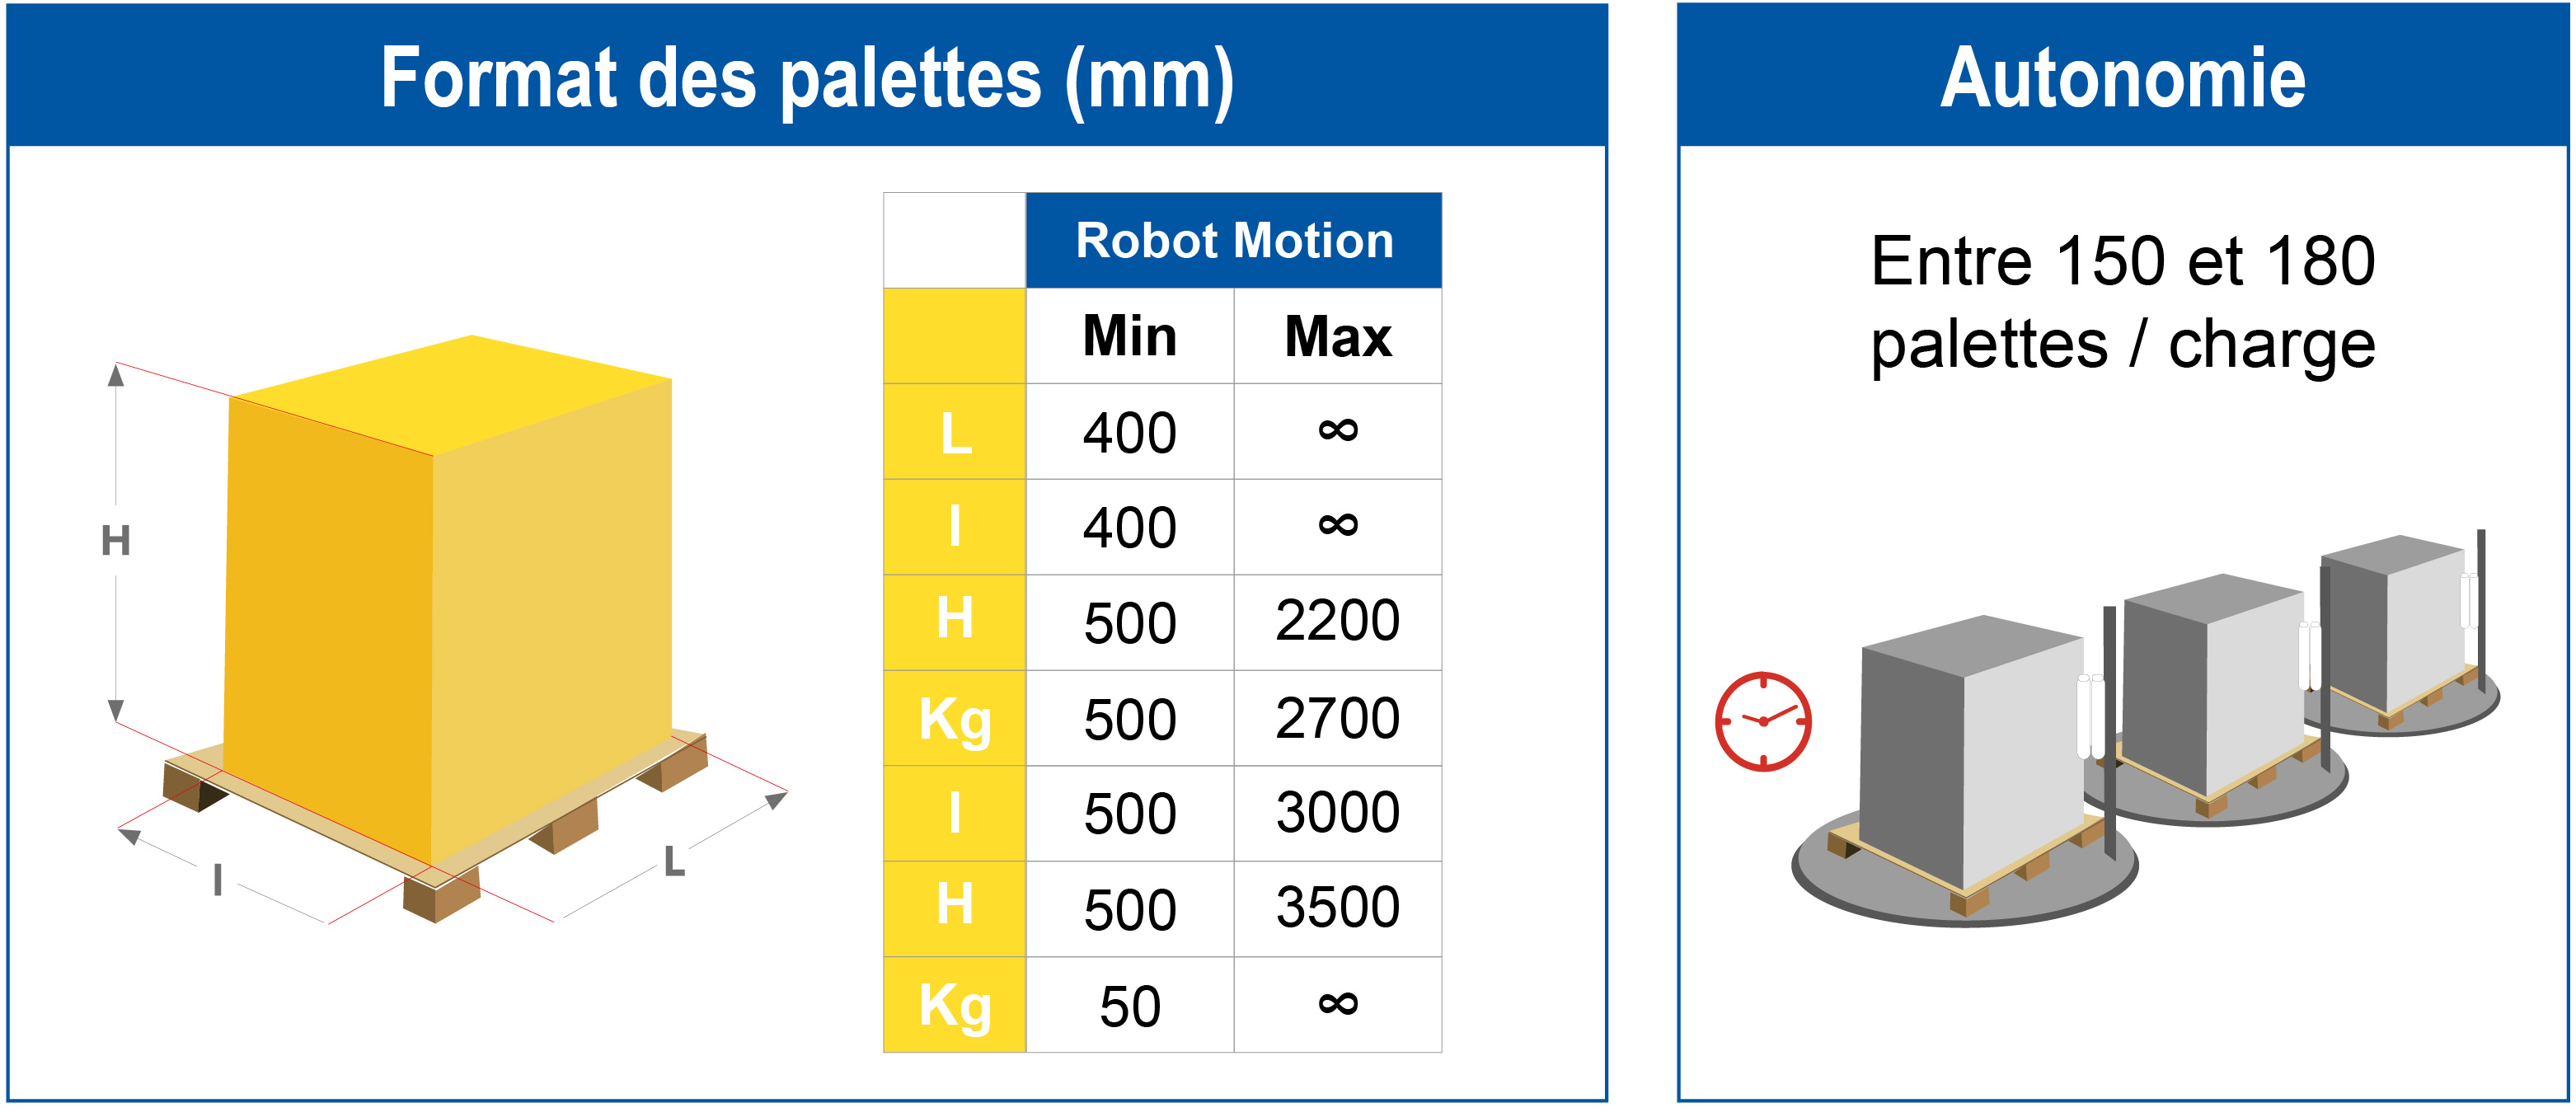 Tableau de dimensions des palettes et autonomie pour robot MOTION